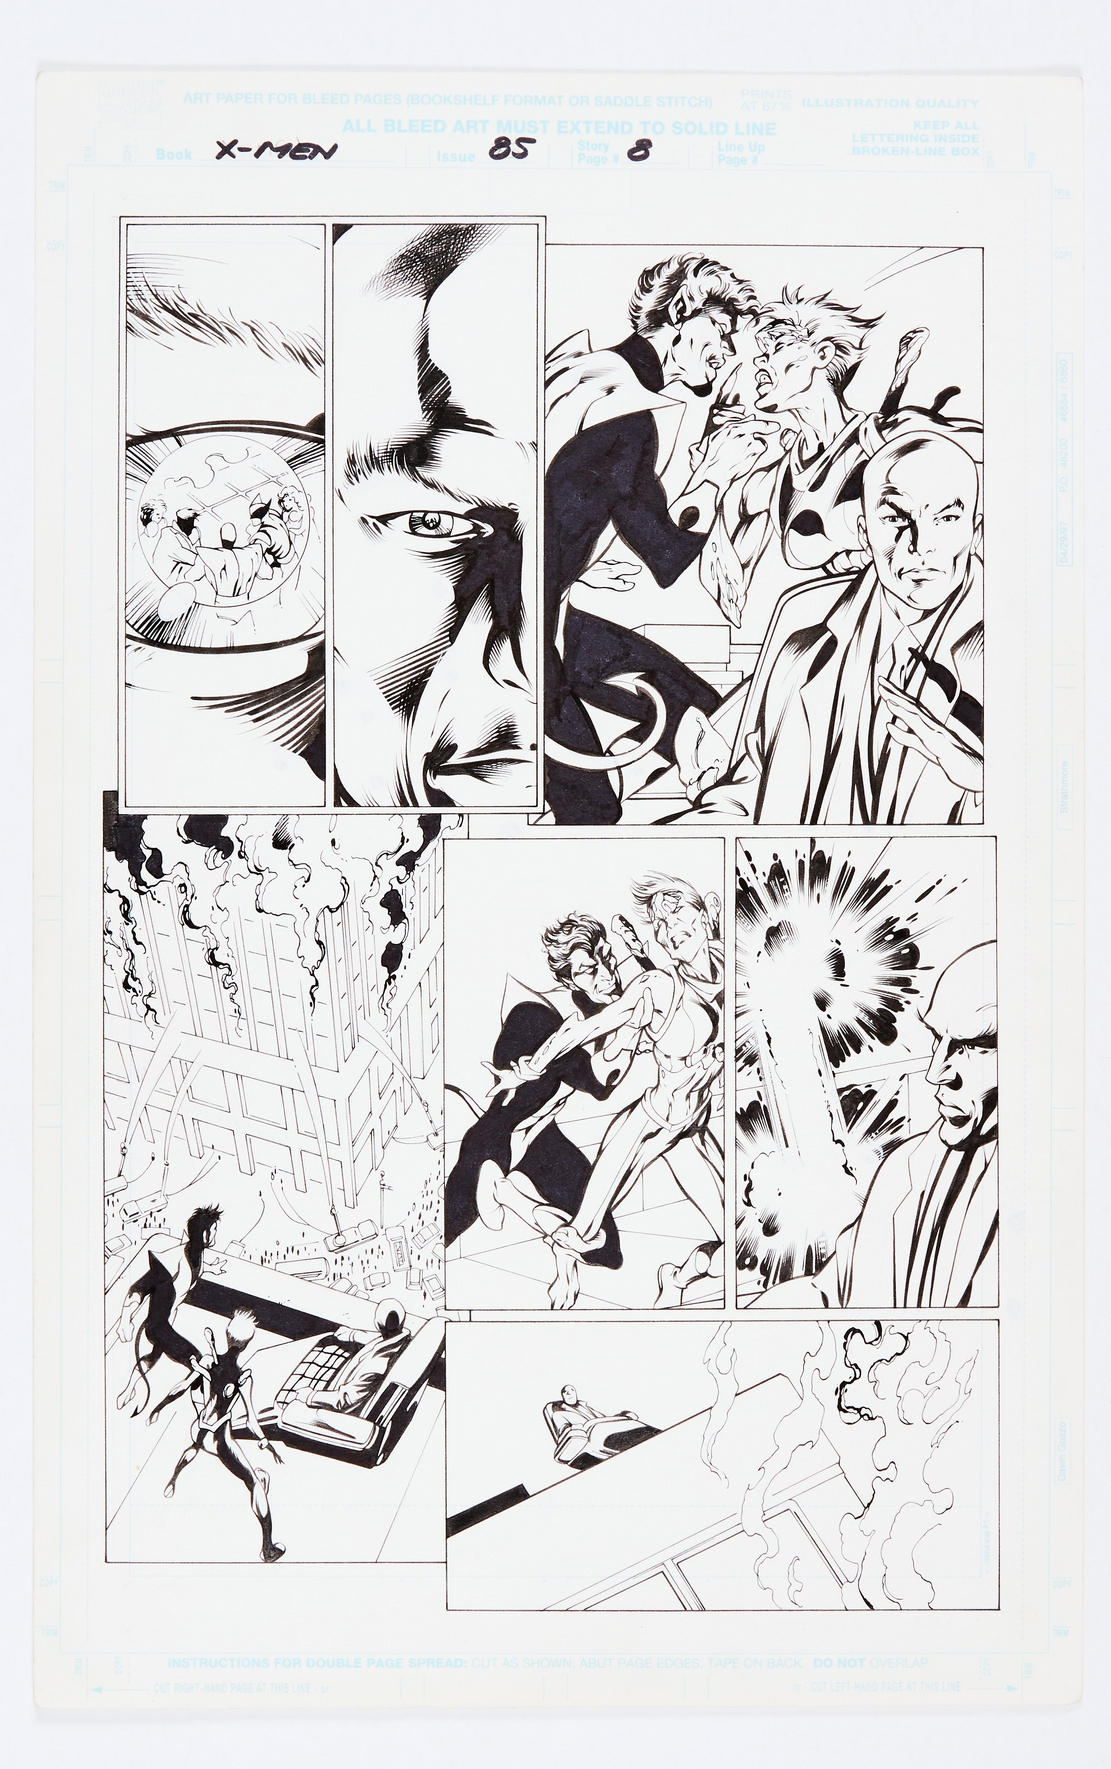 X-Men 85 (1991) original pg 5 artwork by Alan Davis. Indian ink on card. 17 x 11 ins. No Reserve